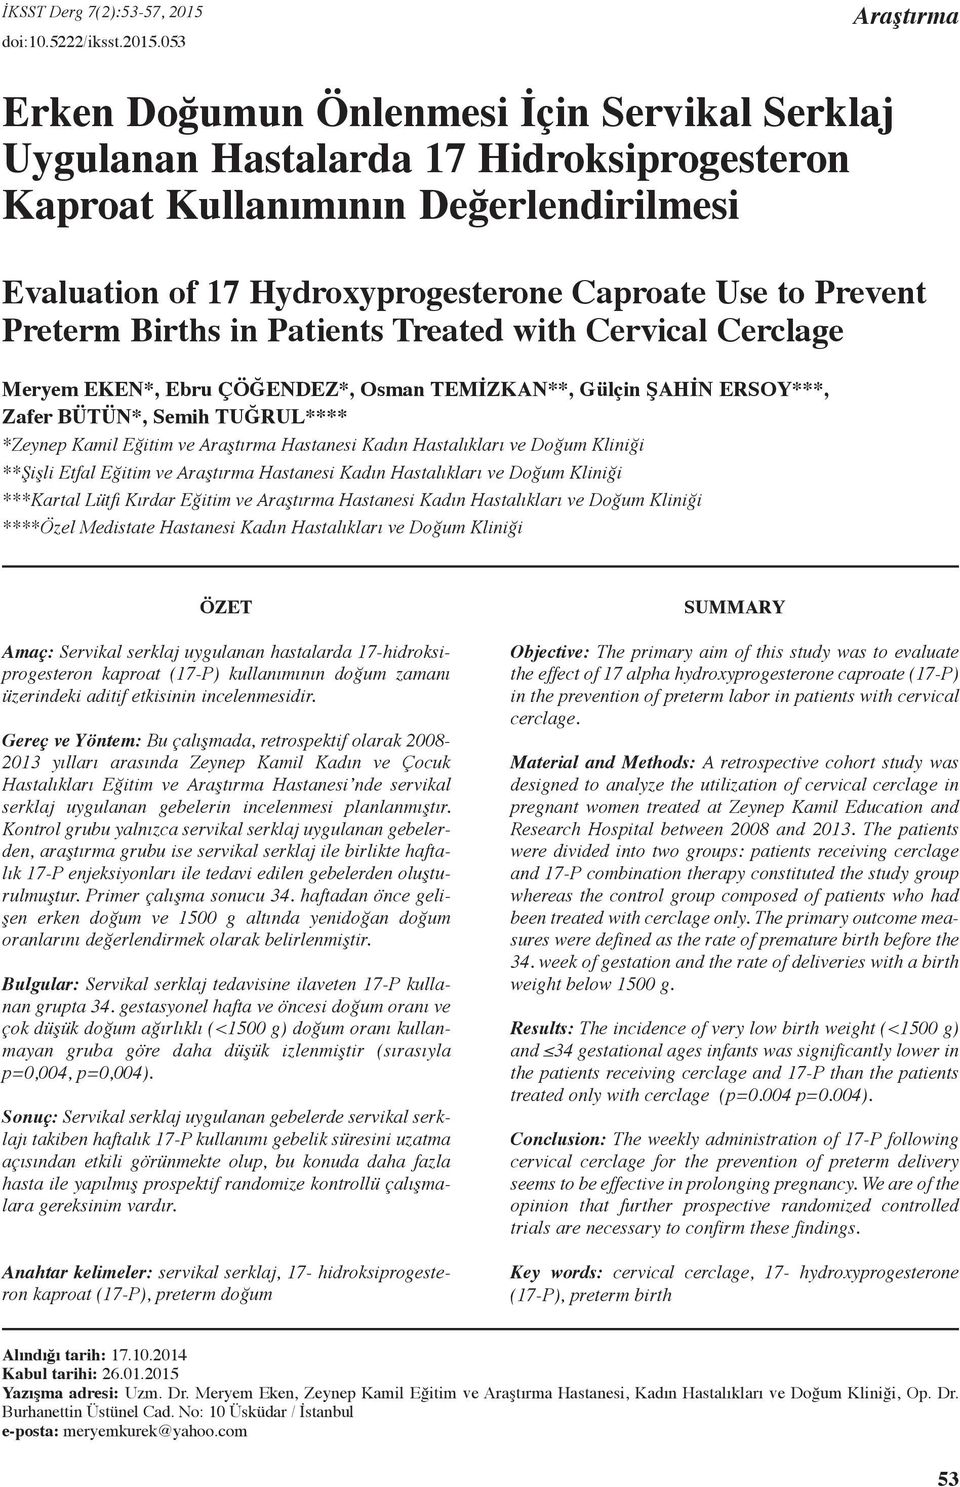 053 Araştırma Erken Doğumun Önlenmesi İçin Servikal Serklaj Uygulanan Hastalarda 17 Hidroksiprogesteron Kaproat Kullanımının Değerlendirilmesi Evaluation of 17 Hydroxyprogesterone Caproate Use to